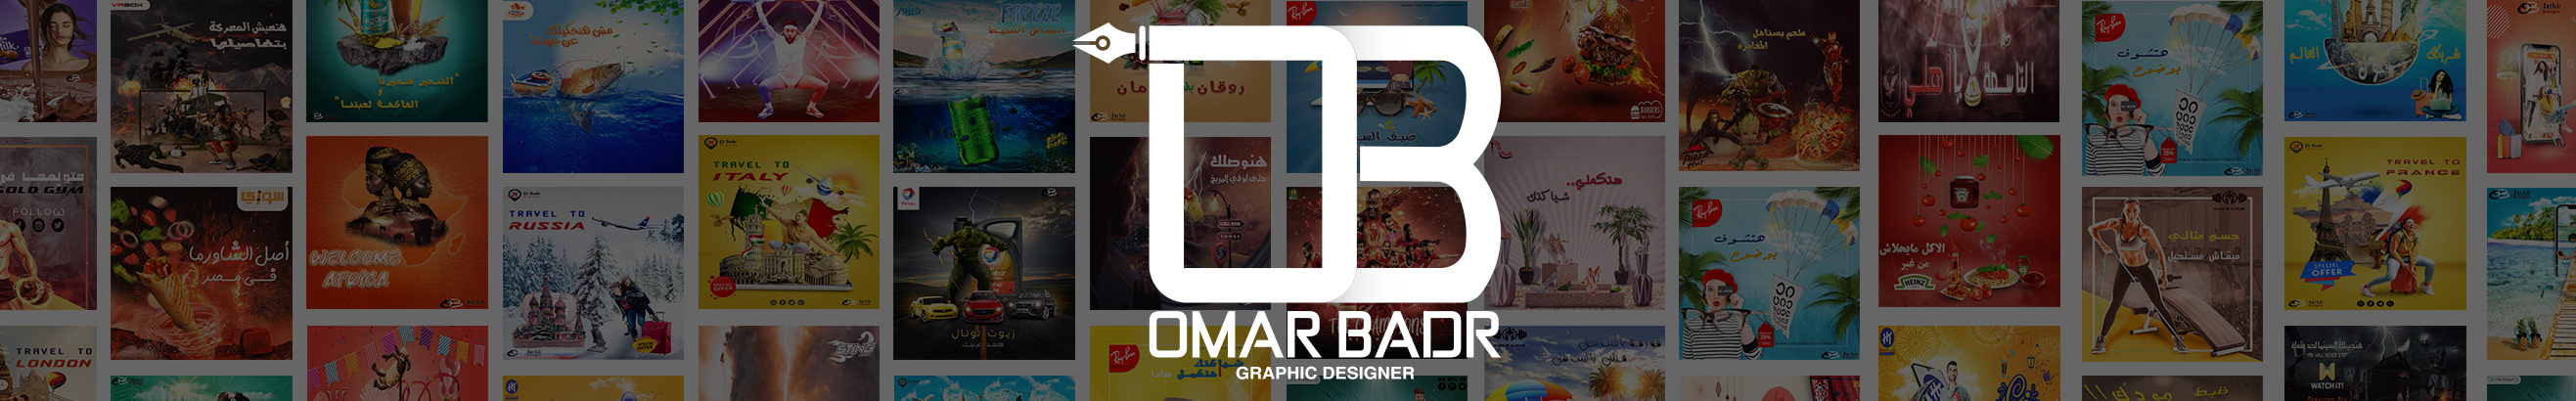 3omr Badr's profile banner